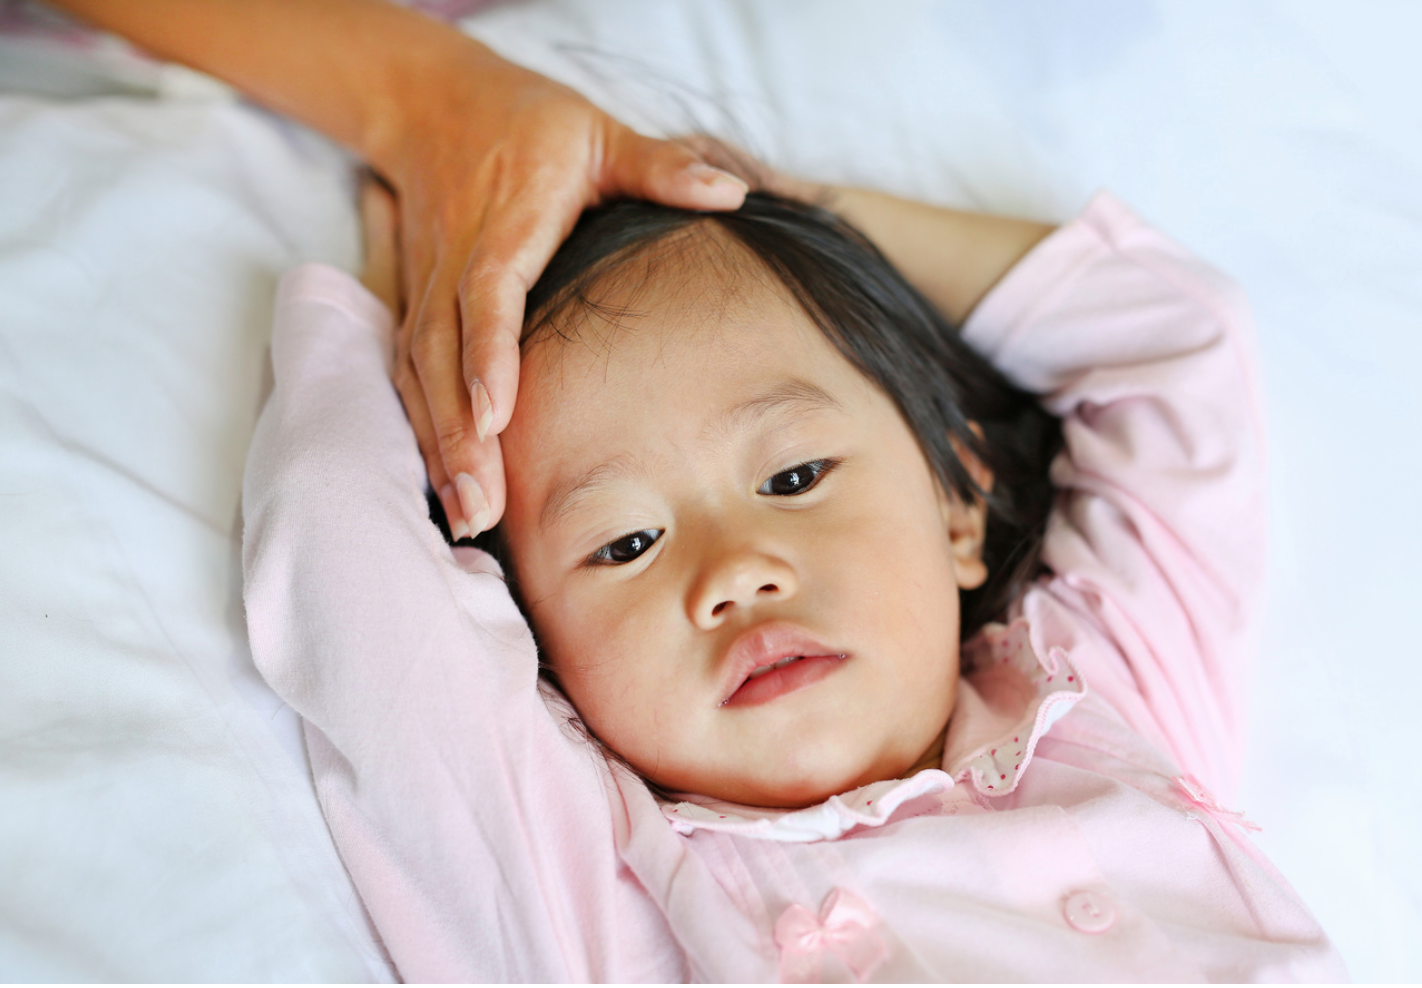 Managing Migraine in Pediatric Populations